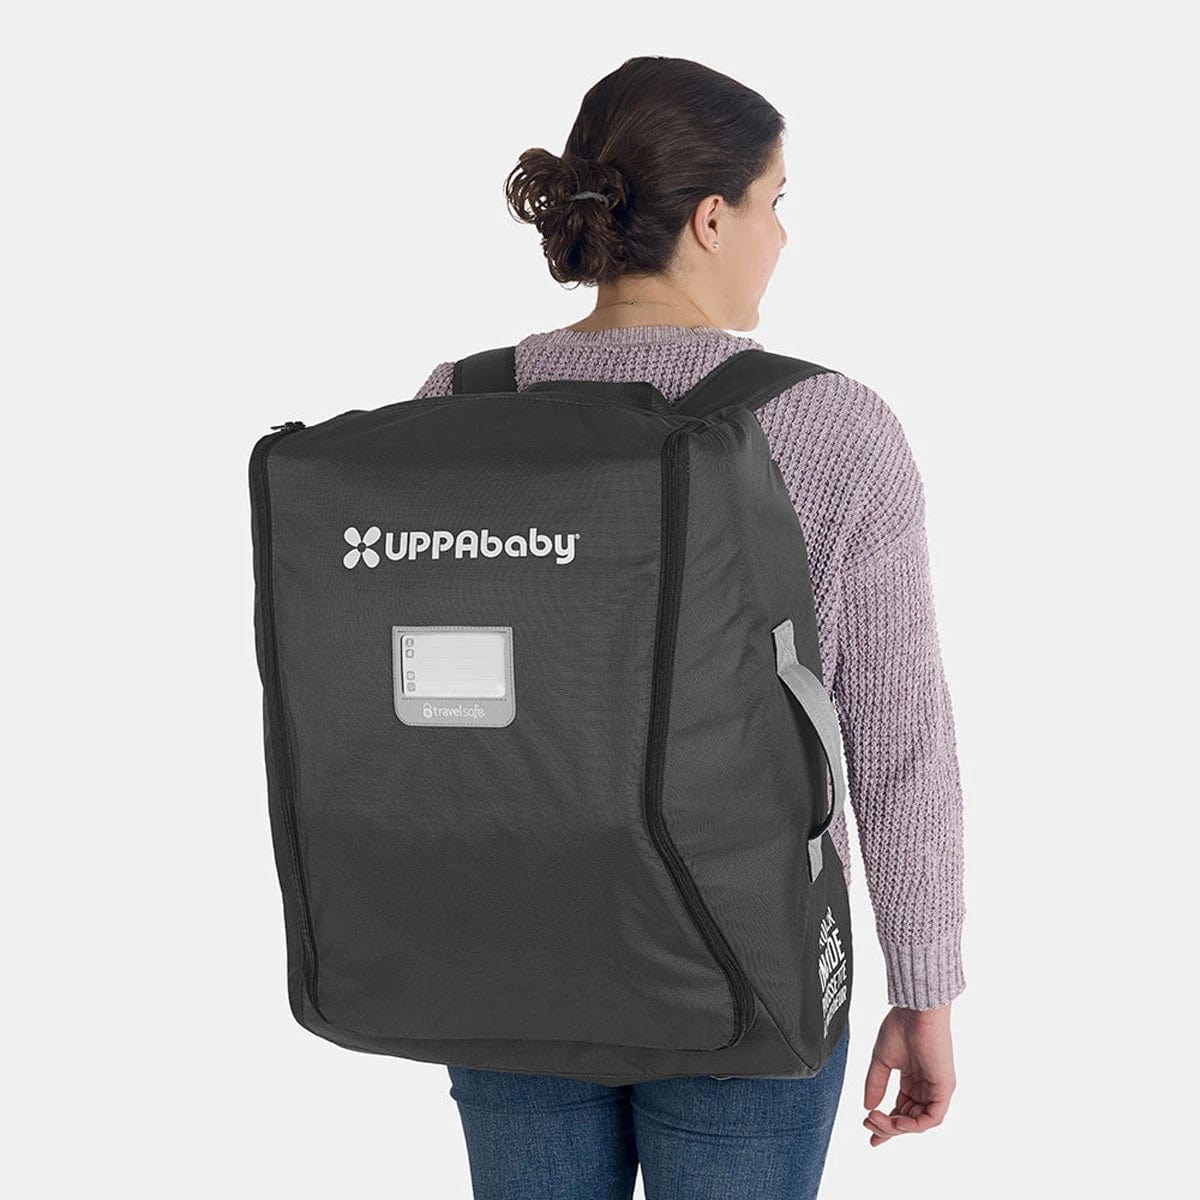 UPPAbaby travel bag UPPAbaby MINU / MINU V2 TravelSafe Travel Bag